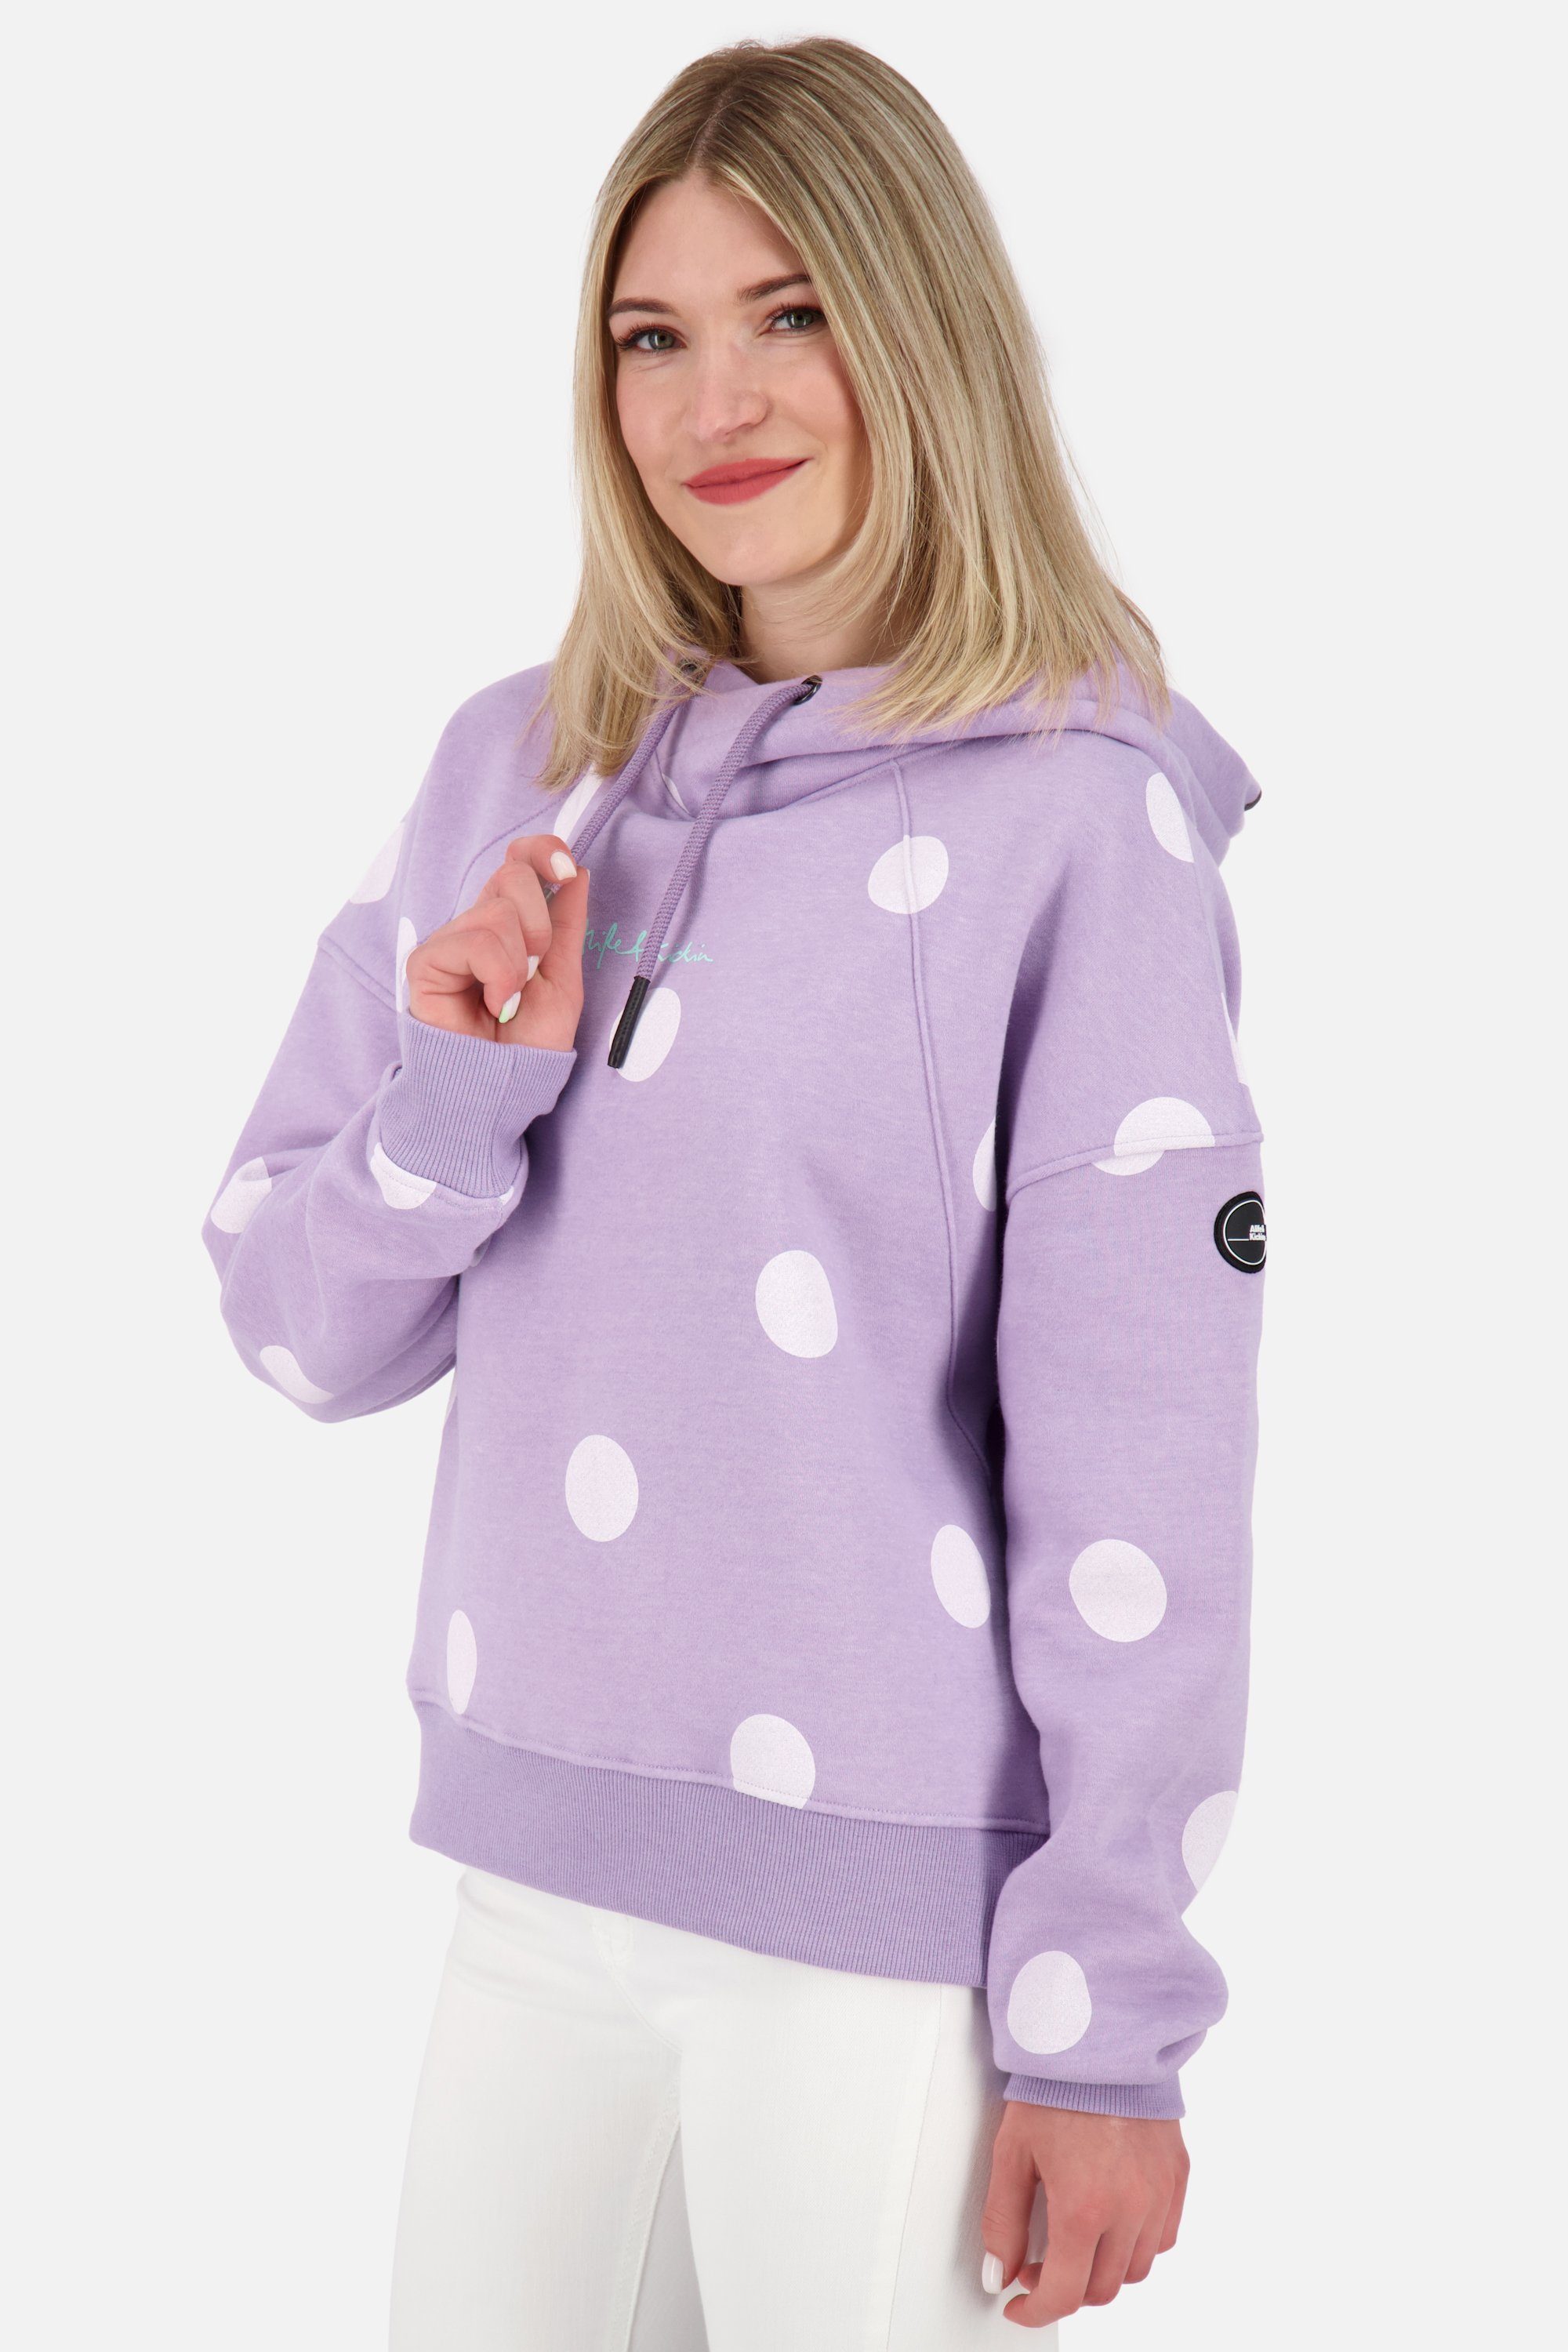 Kapuzensweatshirt, Kapuzensweatshirt & Hoodie JessyAK digital Alife Kickin Damen Pullover melange B lavender Sweatshirt